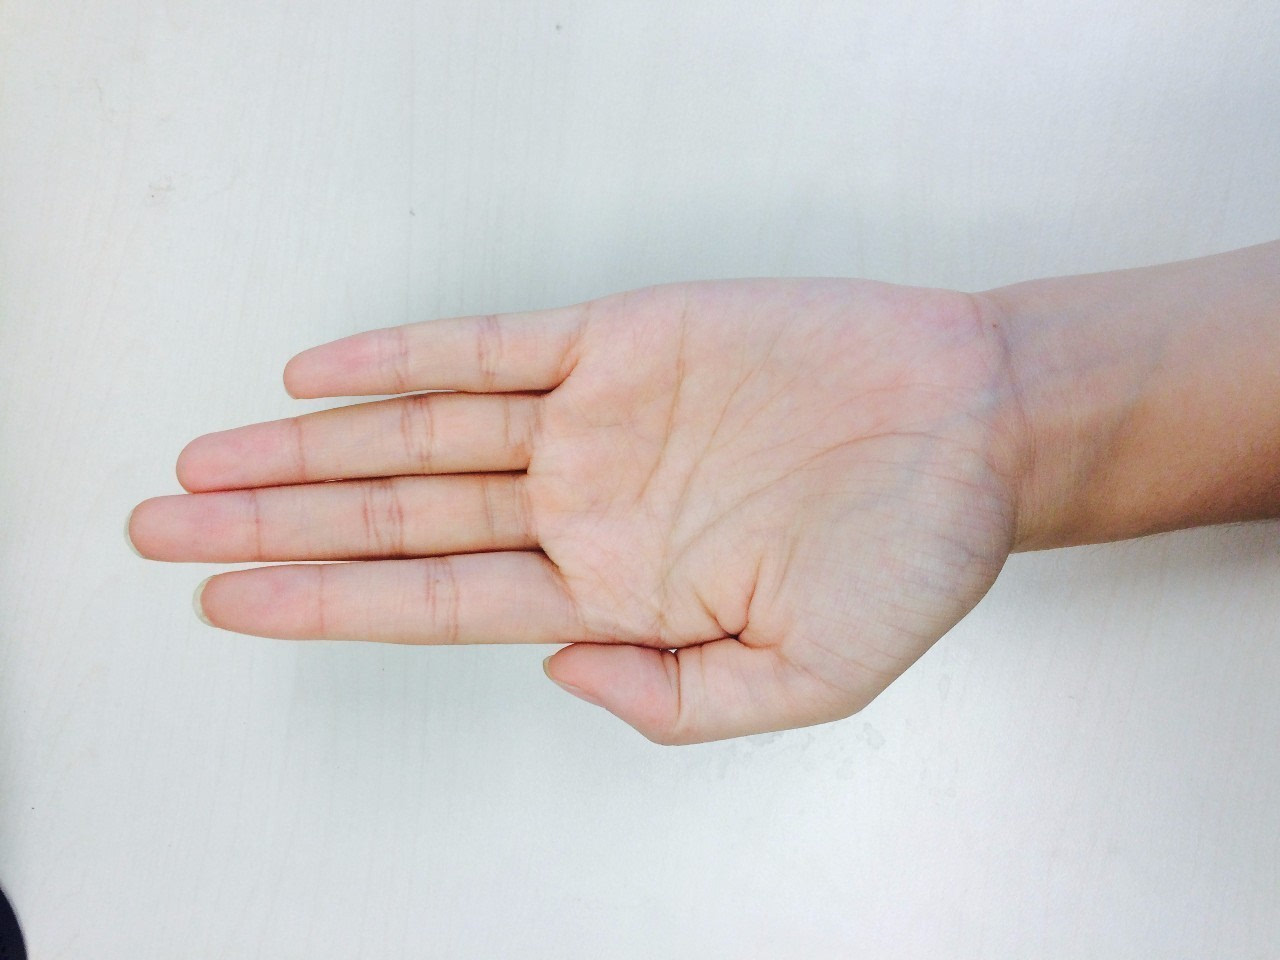 单手捧的动作是五指弯曲与手掌可拿起的量,这样的量法更适合用来简单